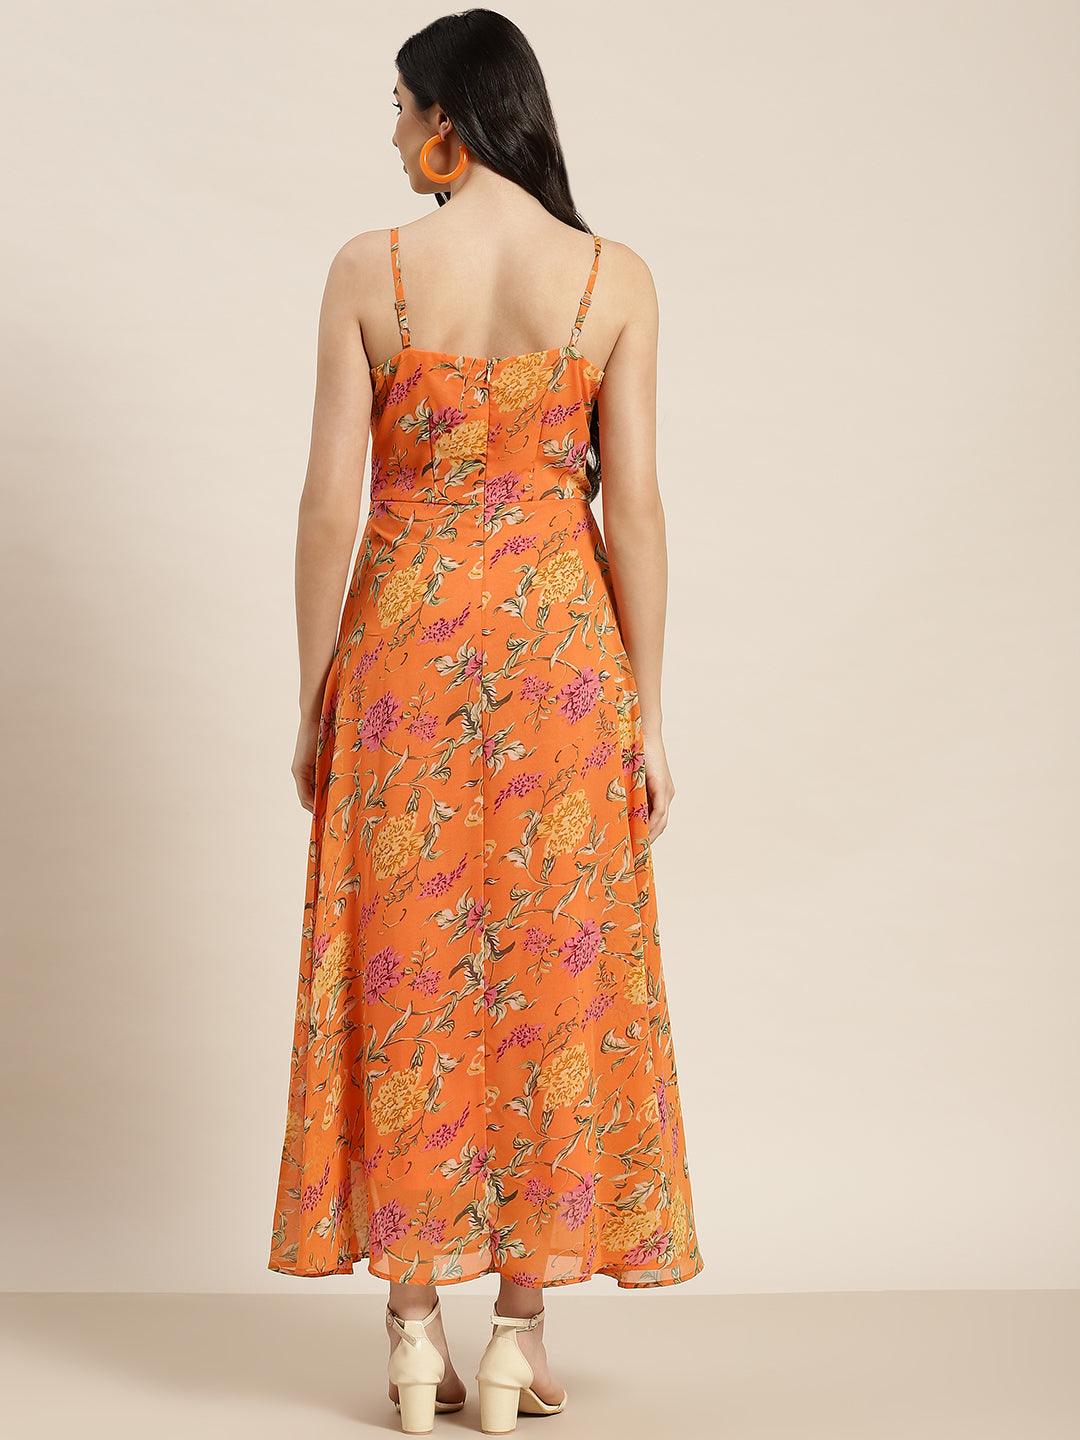 Qurvii Orange Floral Maxi Dress - Qurvii India